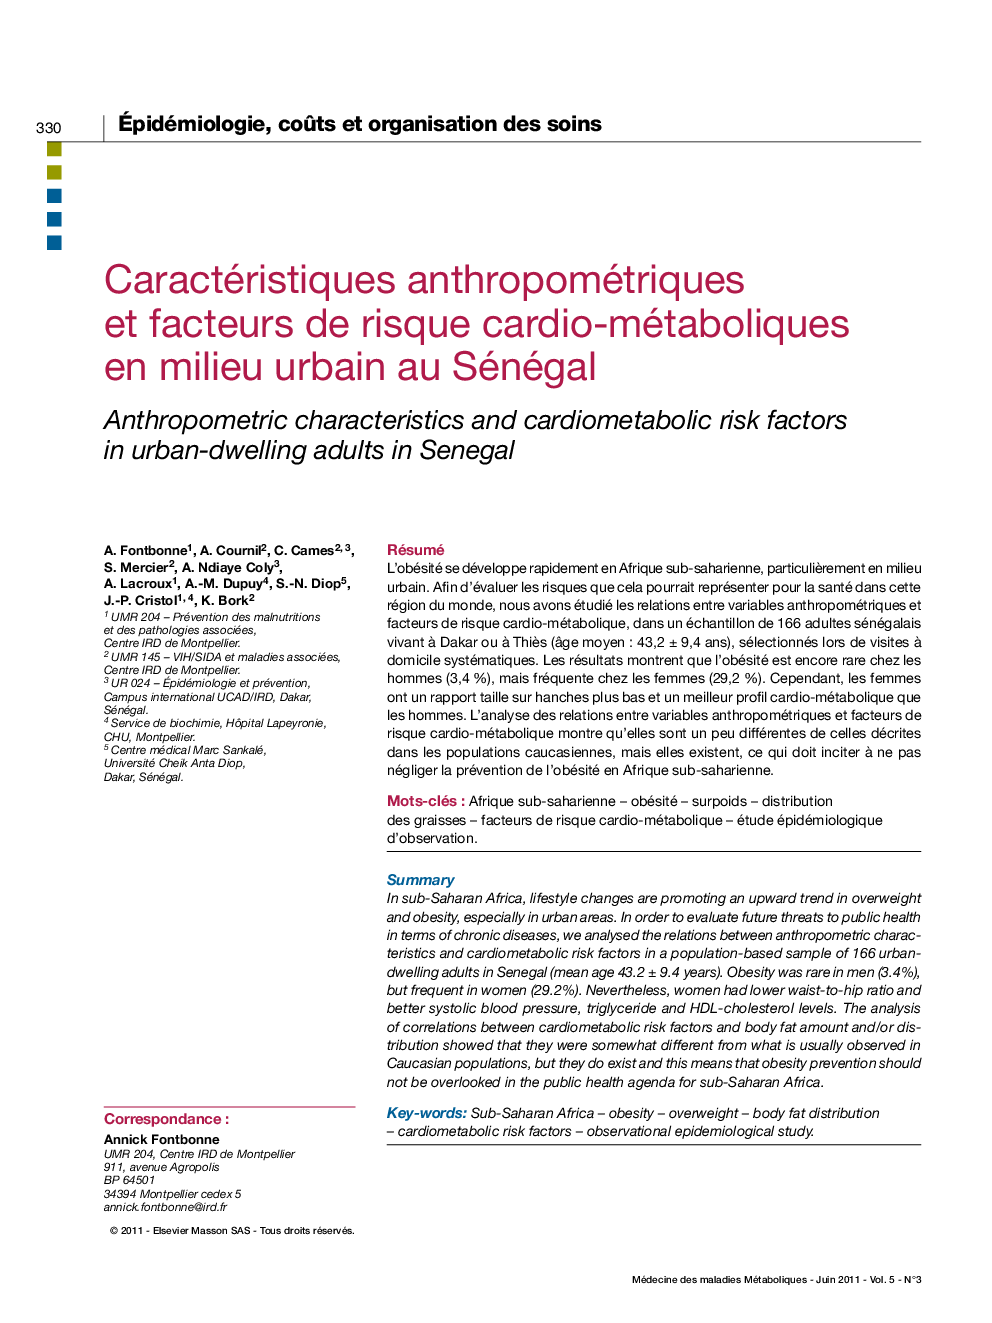 Caractéristiques anthropométriques et facteurs de risque cardio-métaboliques en milieu urbain au Sénégal